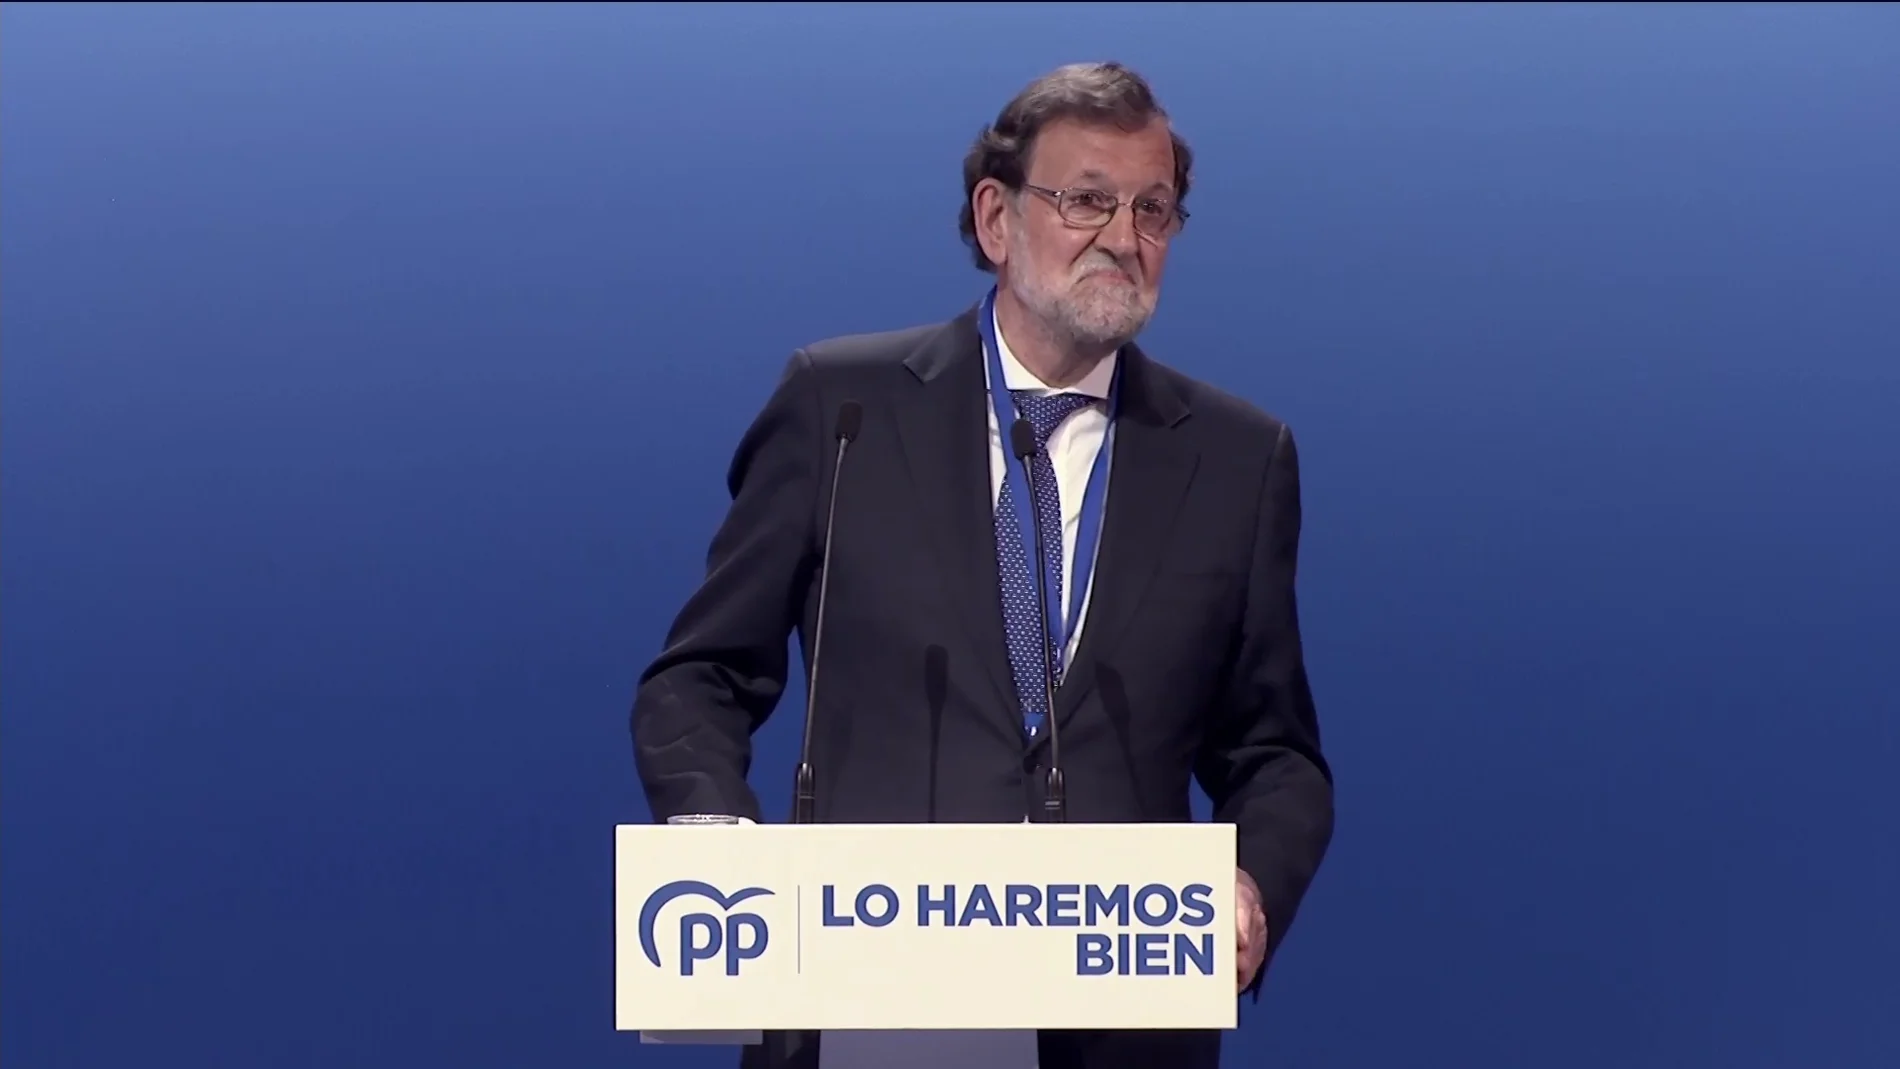  Rajoy provoca carcajadas en el Congreso del PP al bromear con su forma de expresarse